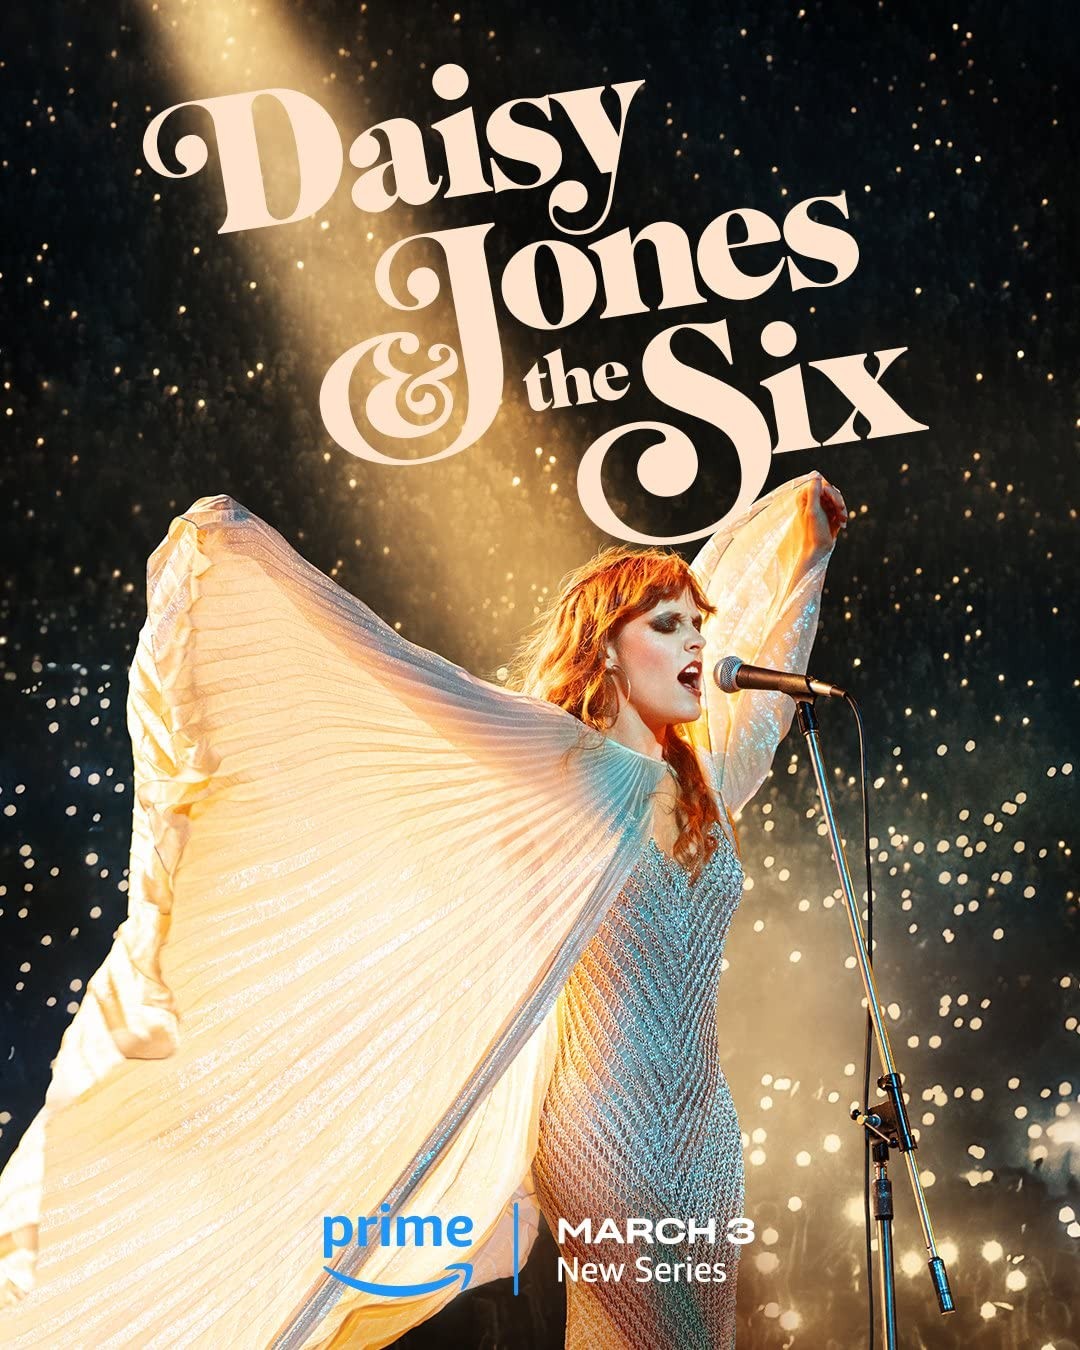 Дейзи Джонс и The Six / Daisy Jones & The Six